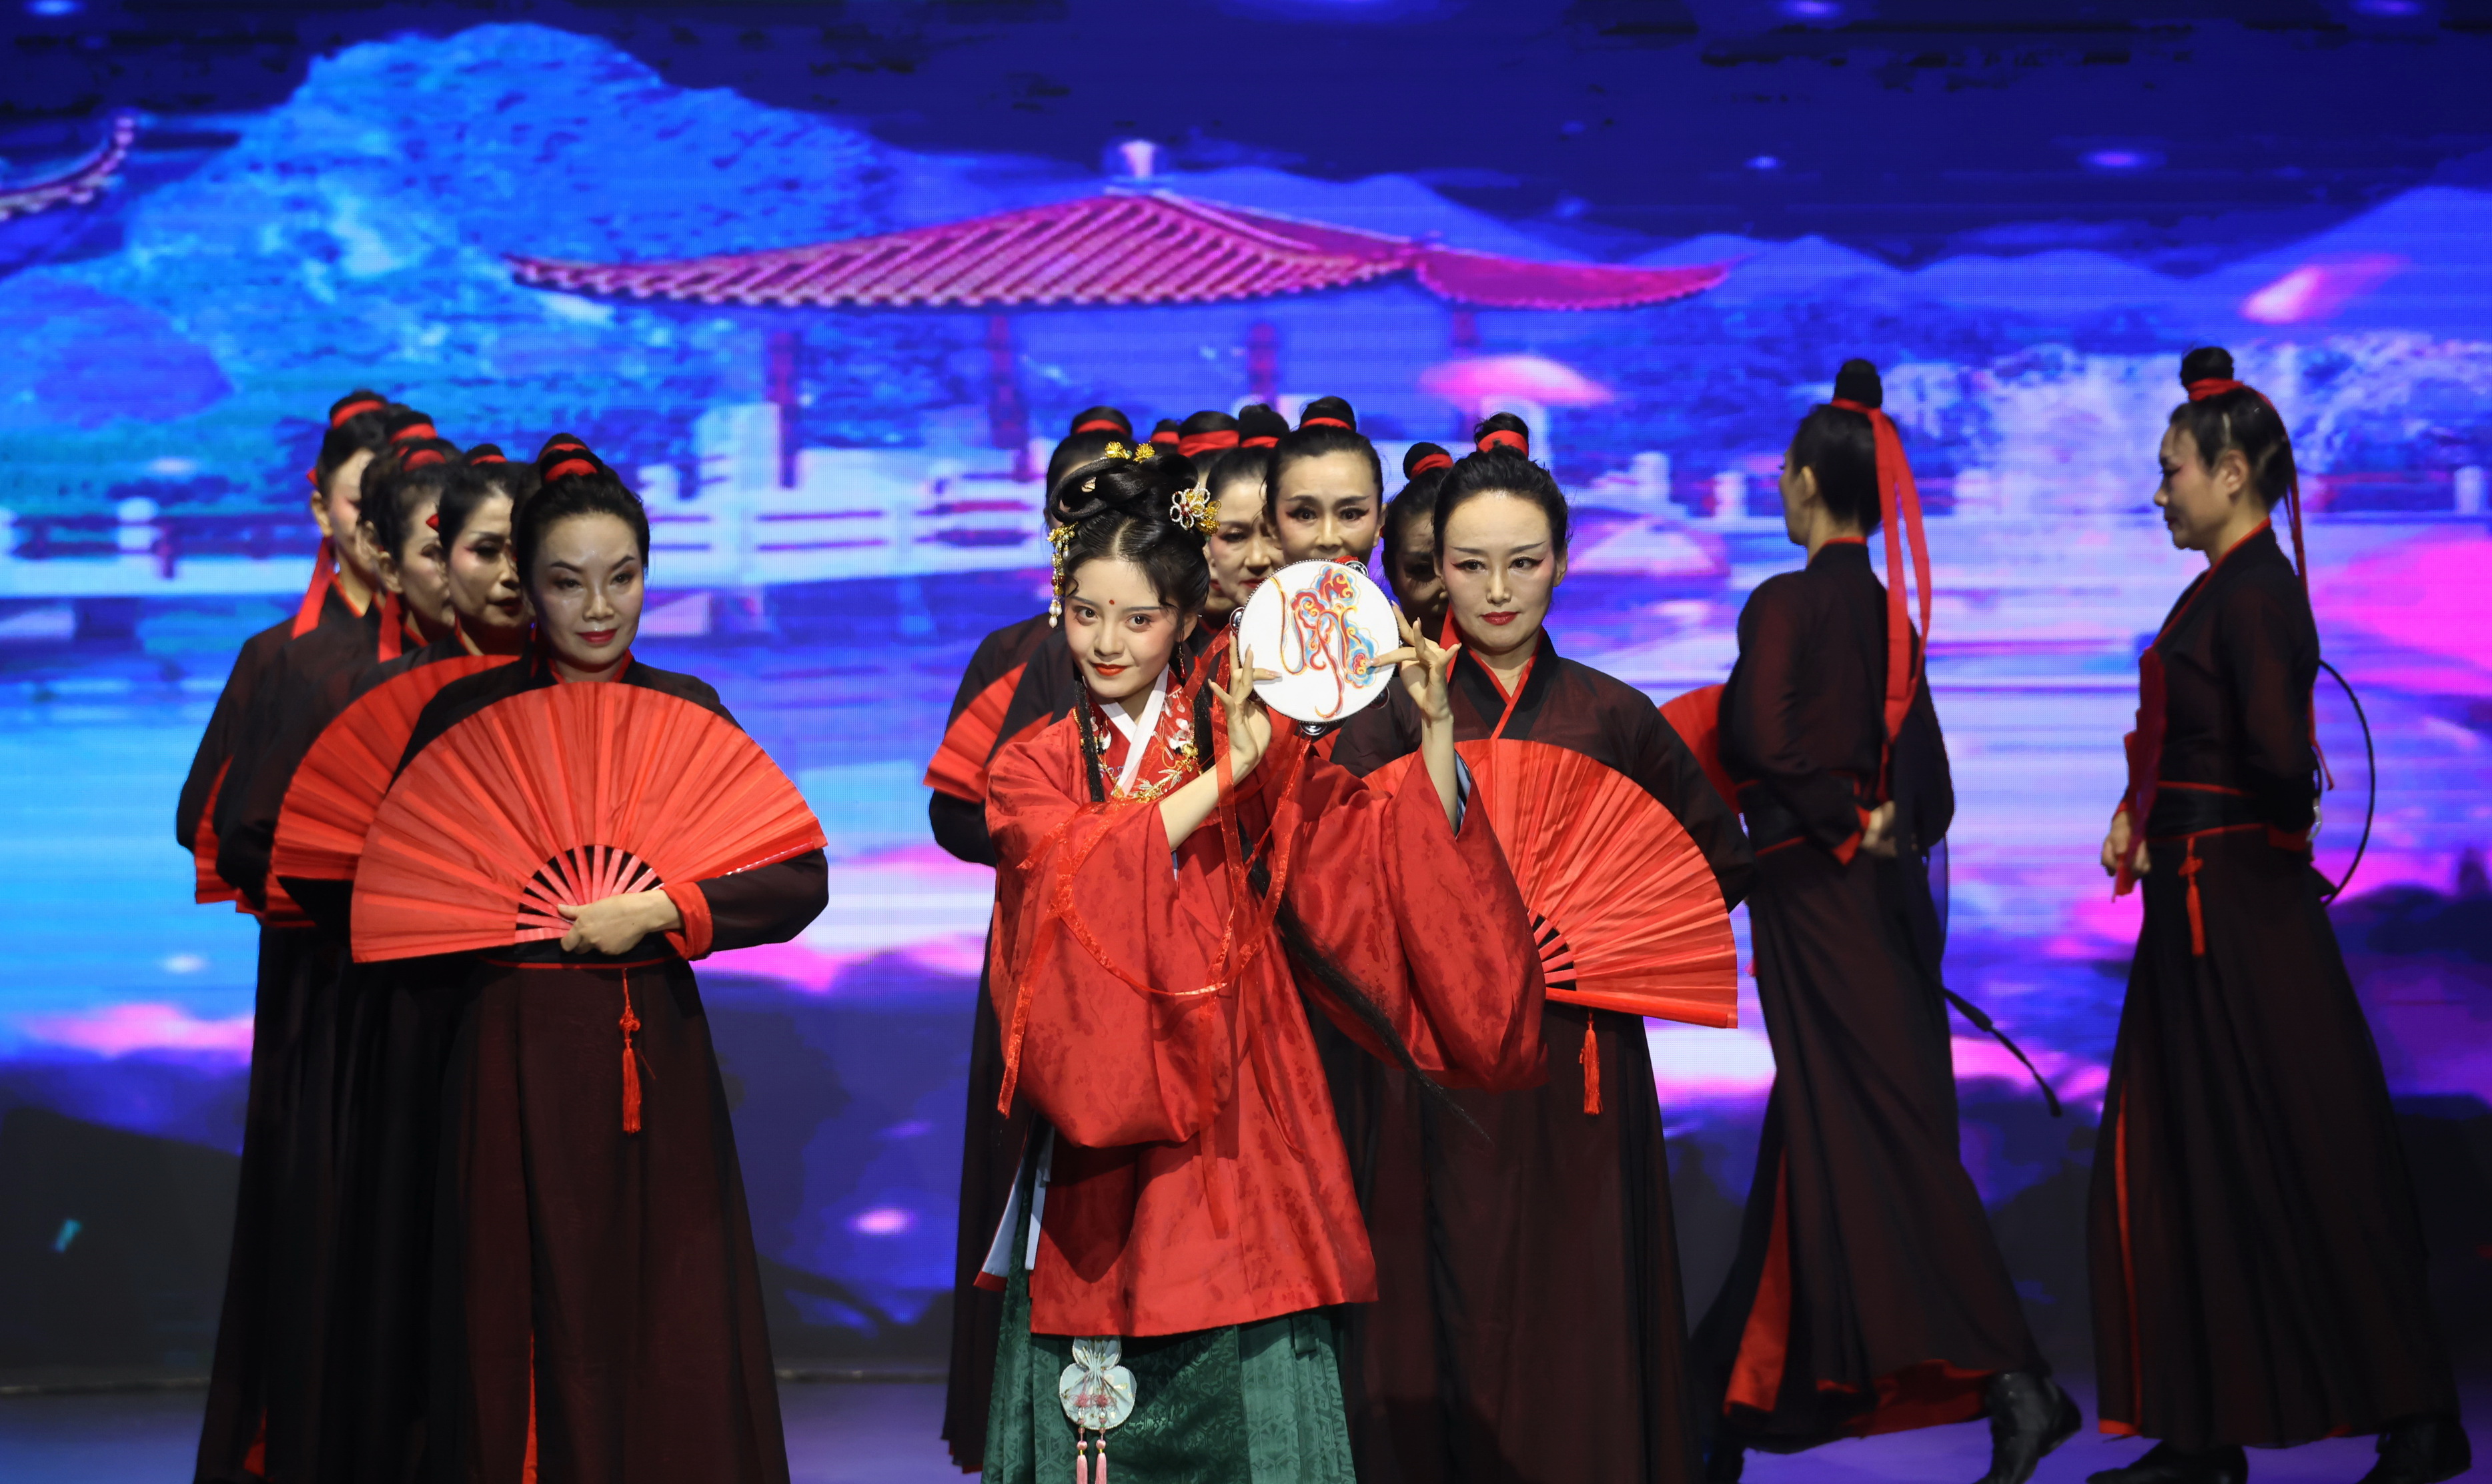 风雅颂演绎中华魅力 “世界华服大会”在武昌举办